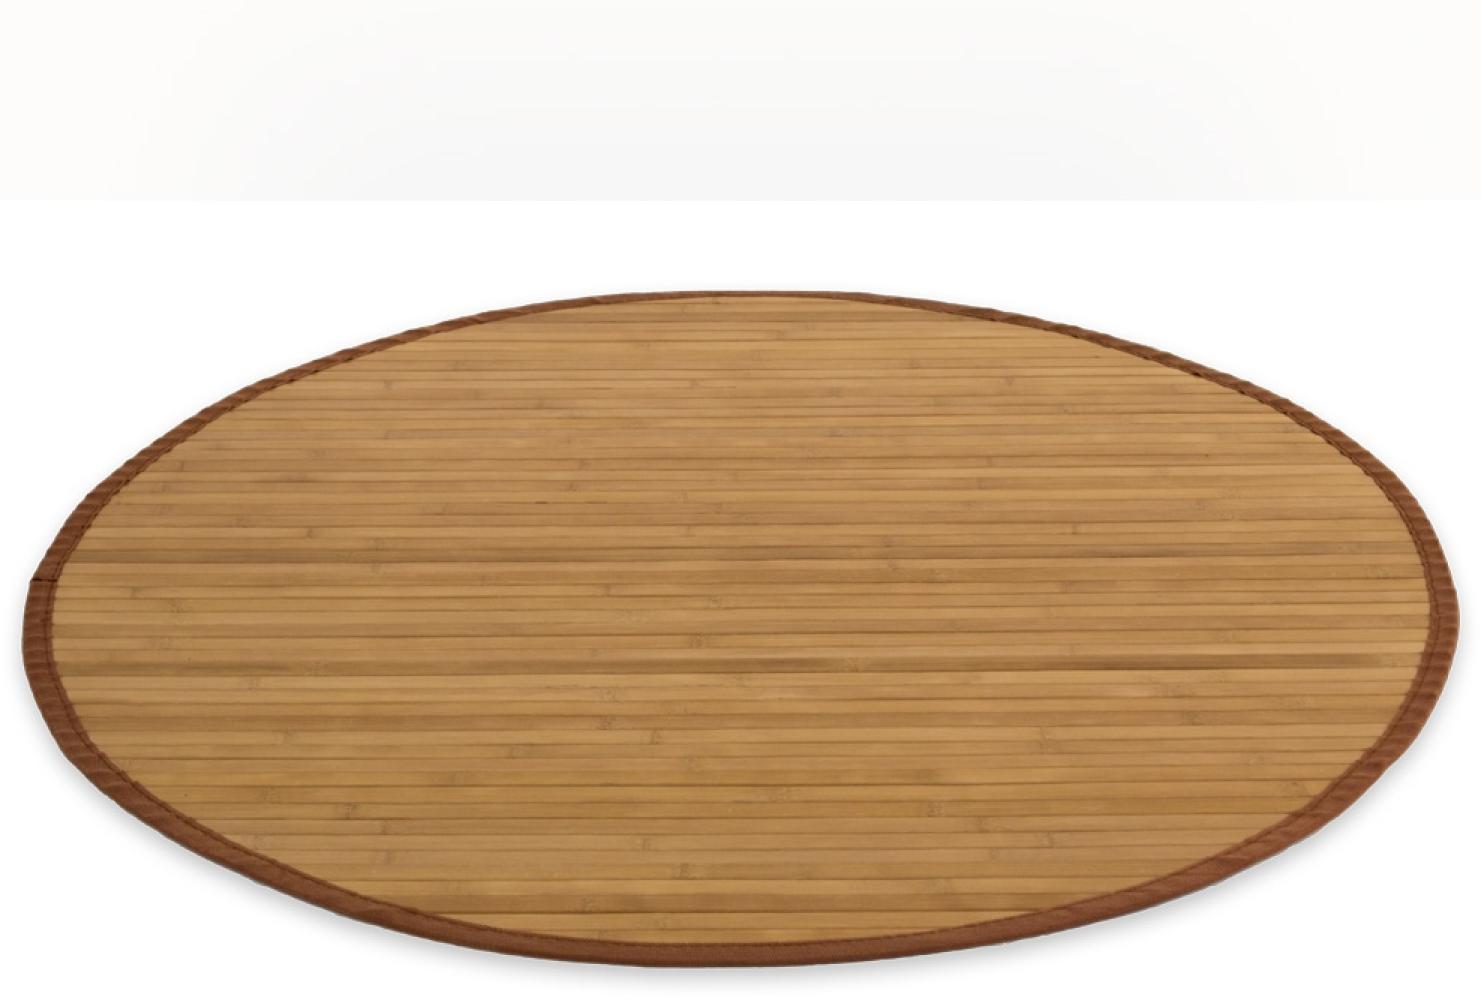 Homestyle4u Teppich, rund, Bambus braun, Ø 120 cm Bild 1